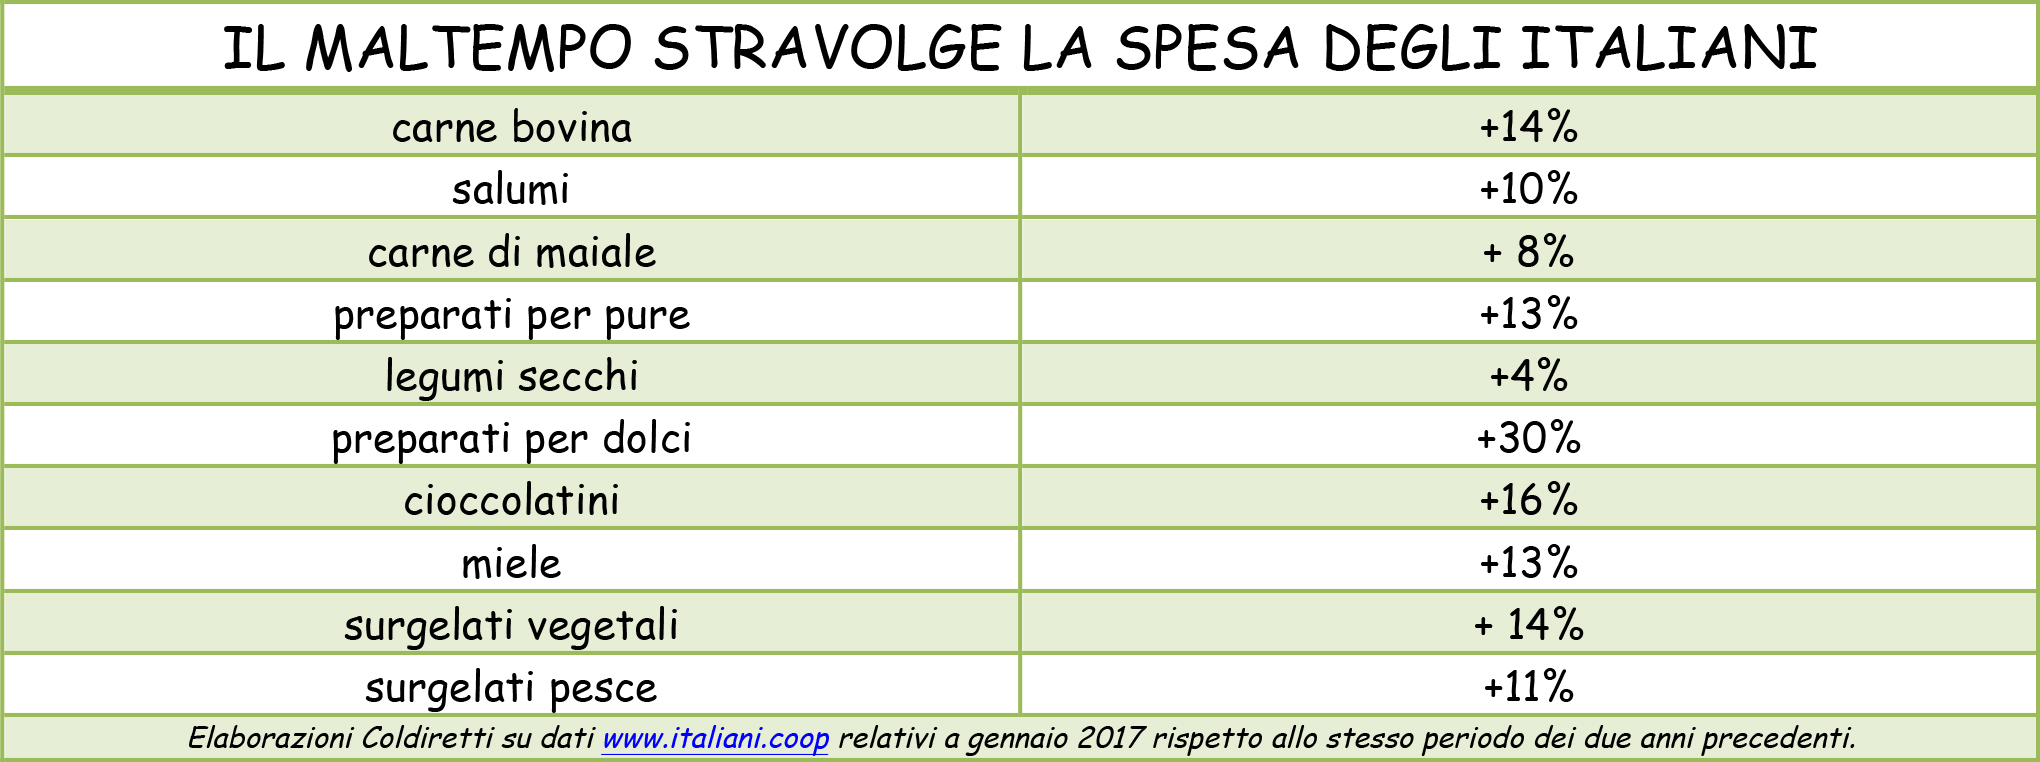 Microsoft Word - IL MALTEMPO STRAVOLGE LA SPESA DEGLI ITALIANI.d